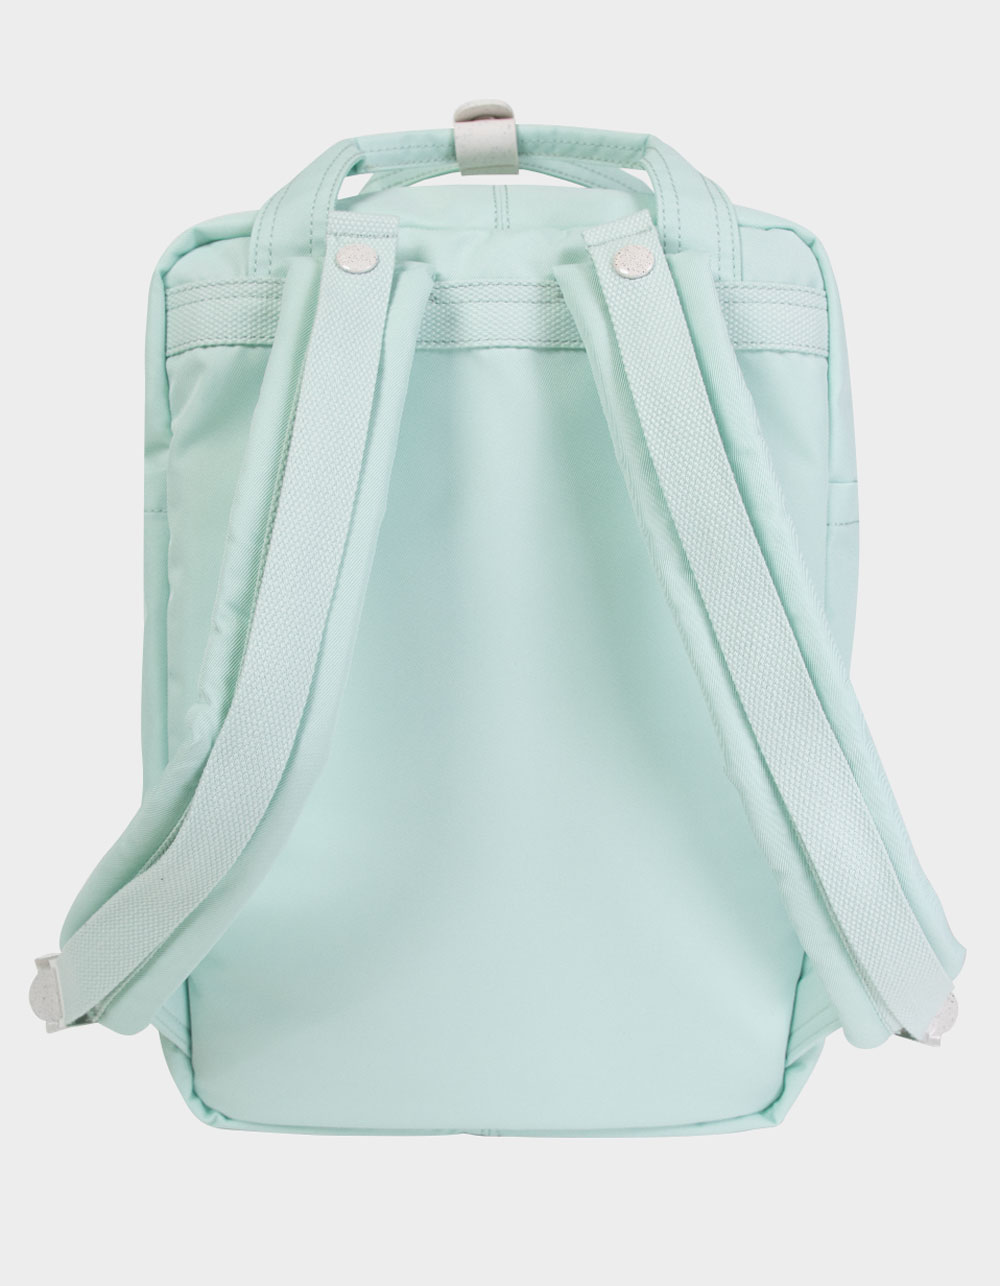 DOUGHNUT Monet Series Macaroon Backpack - MINT | Tillys